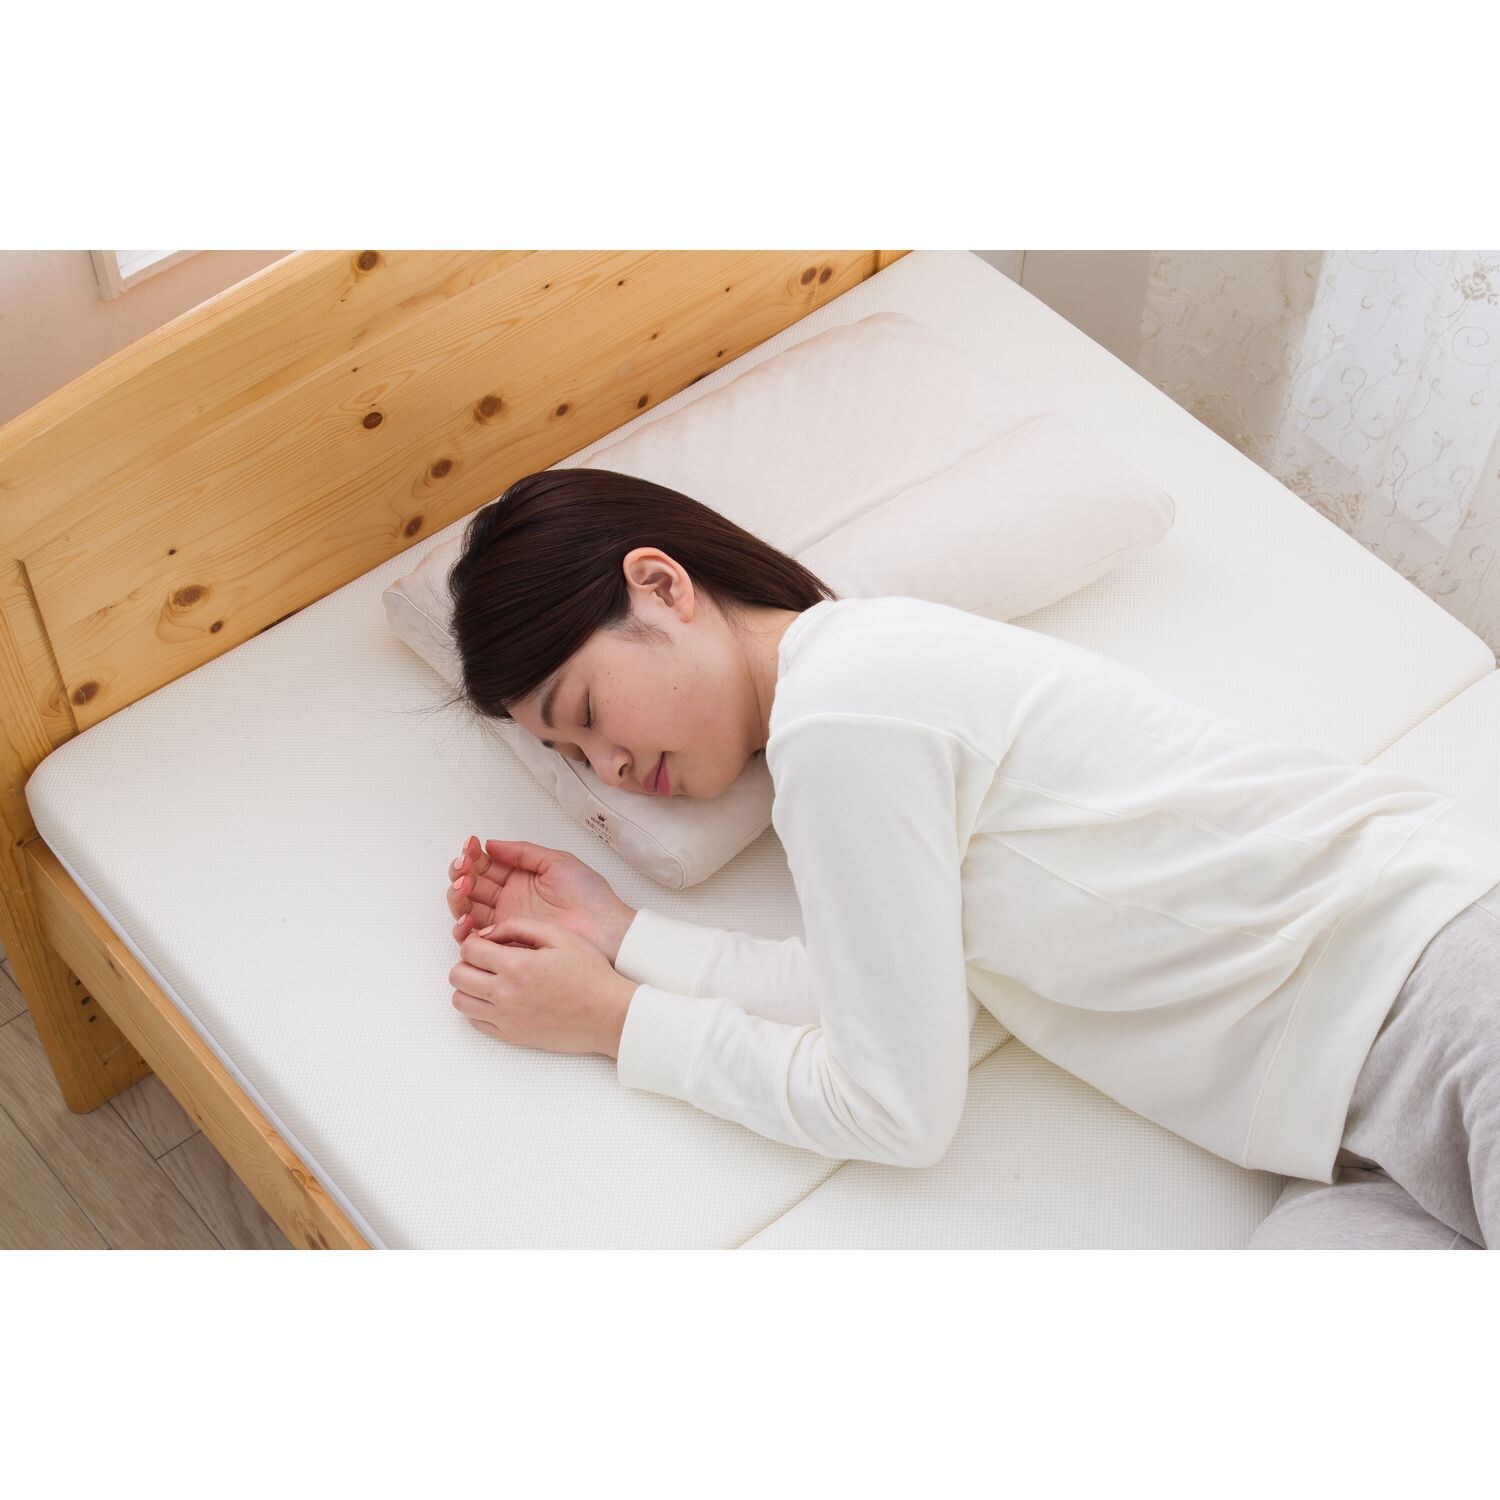 【西川】睡眠博士シリーズ 寝返りアシスト枕 【洗える枕】